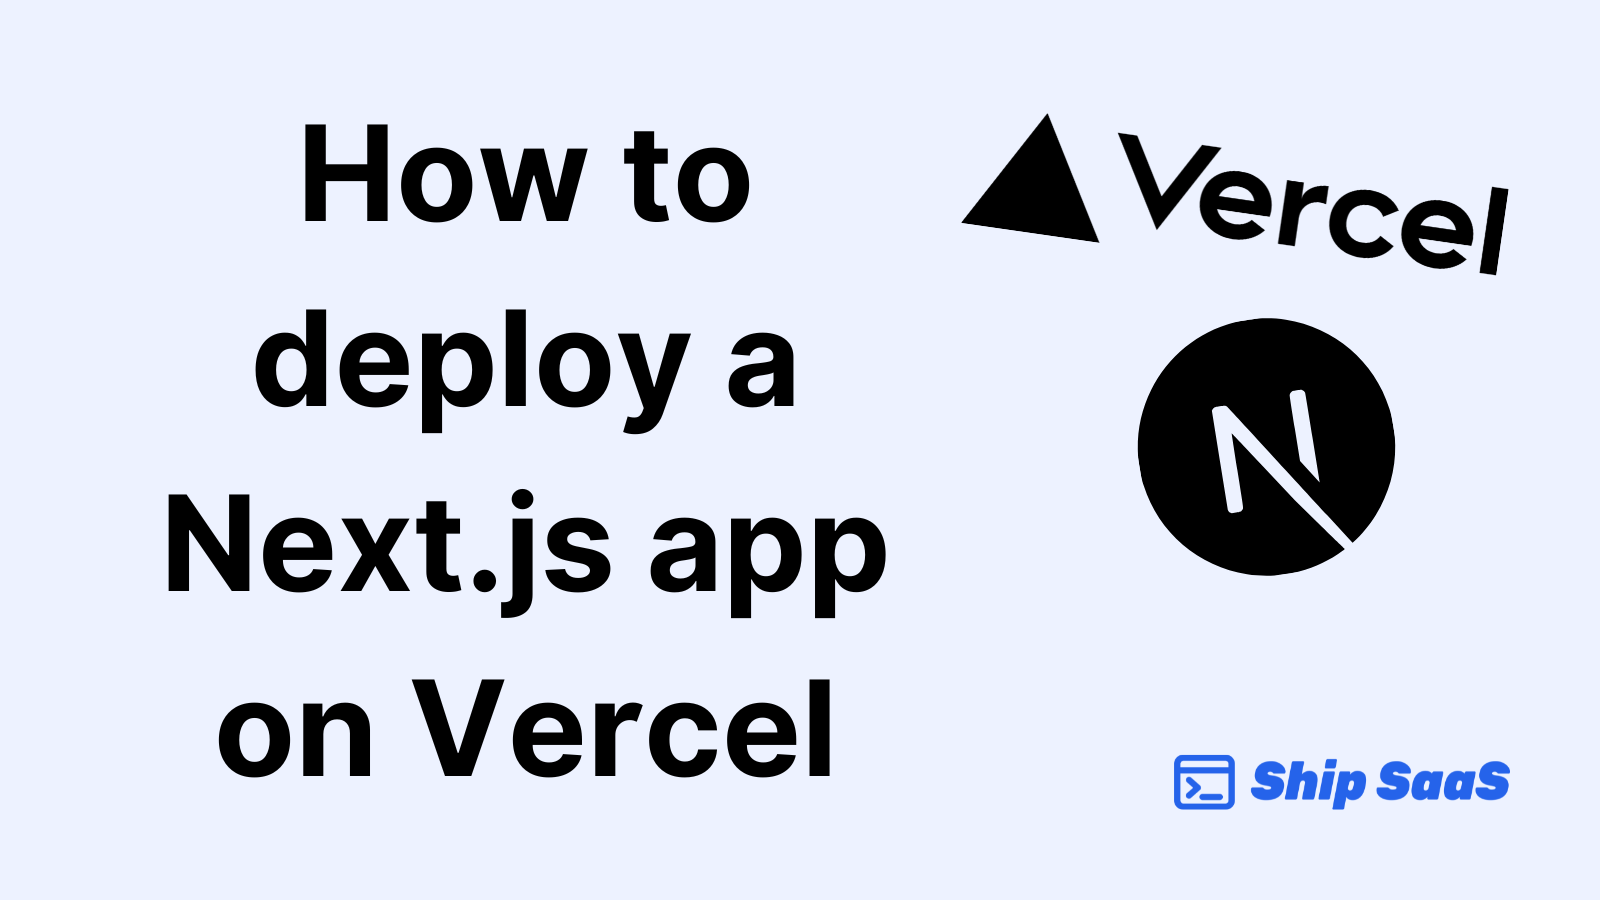 How to deploy a Next.js app on Vercel